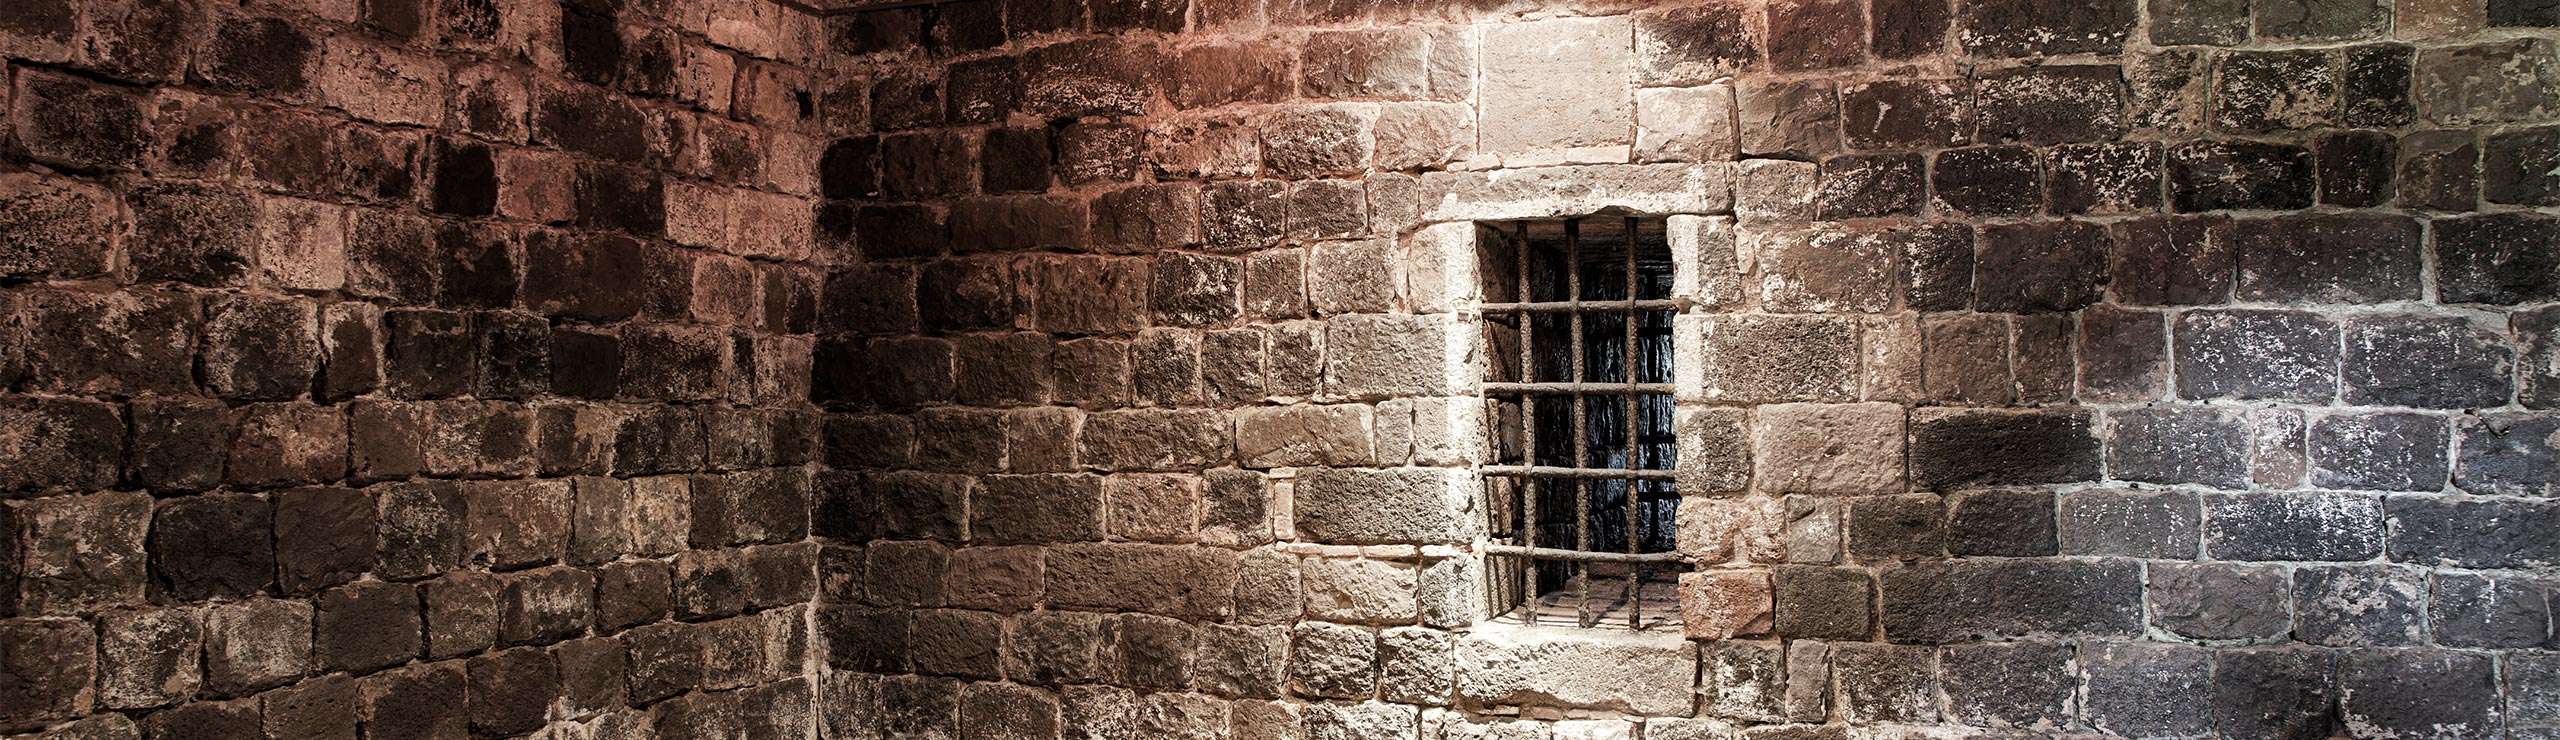 La Prisión Estatal de Tennessee, uno de los lugares más embrujados de Nashville.